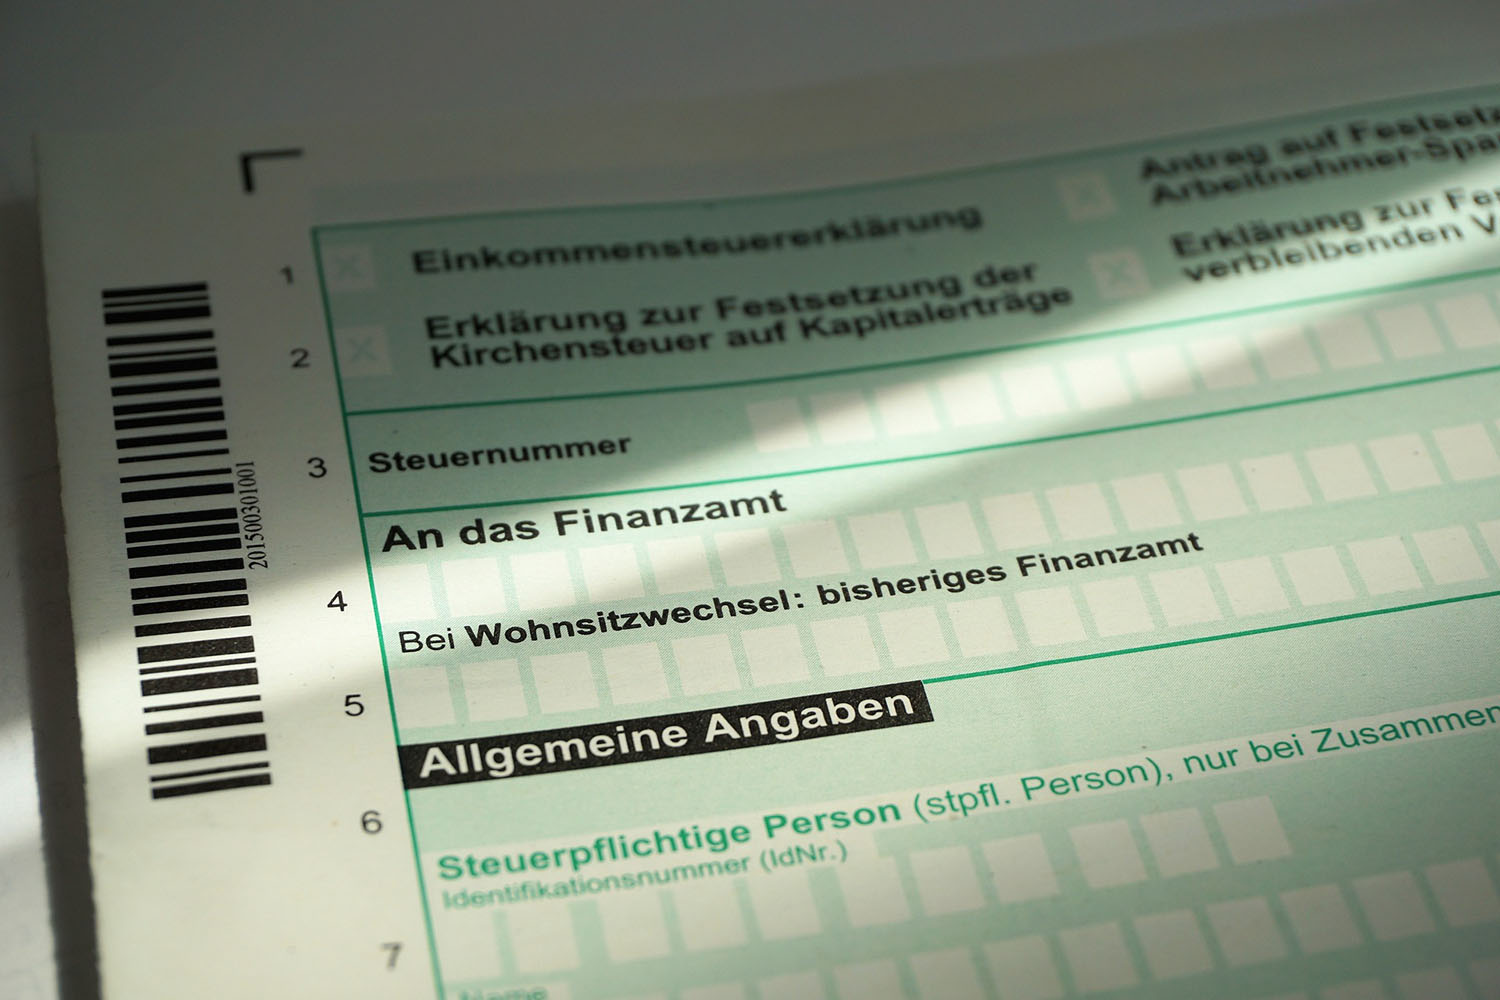 Deutsches Steuerformular für das Finanzamt.